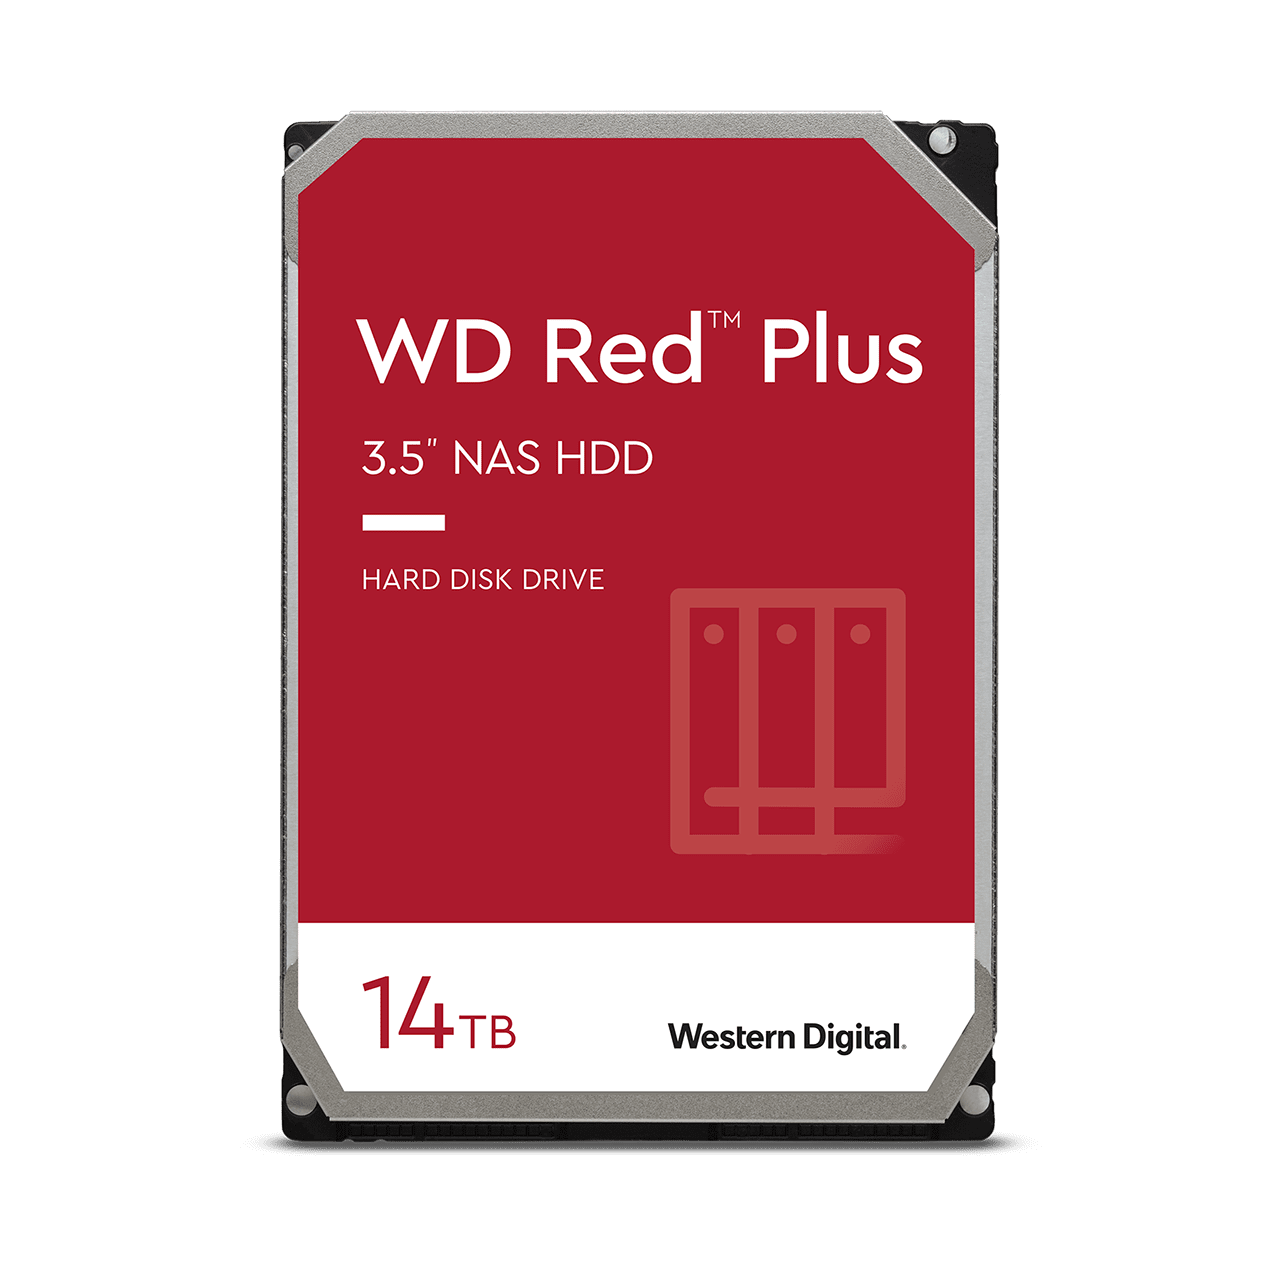 wd-red-plus-sata-3-5-hdd-14tb.thumb.1280.1280